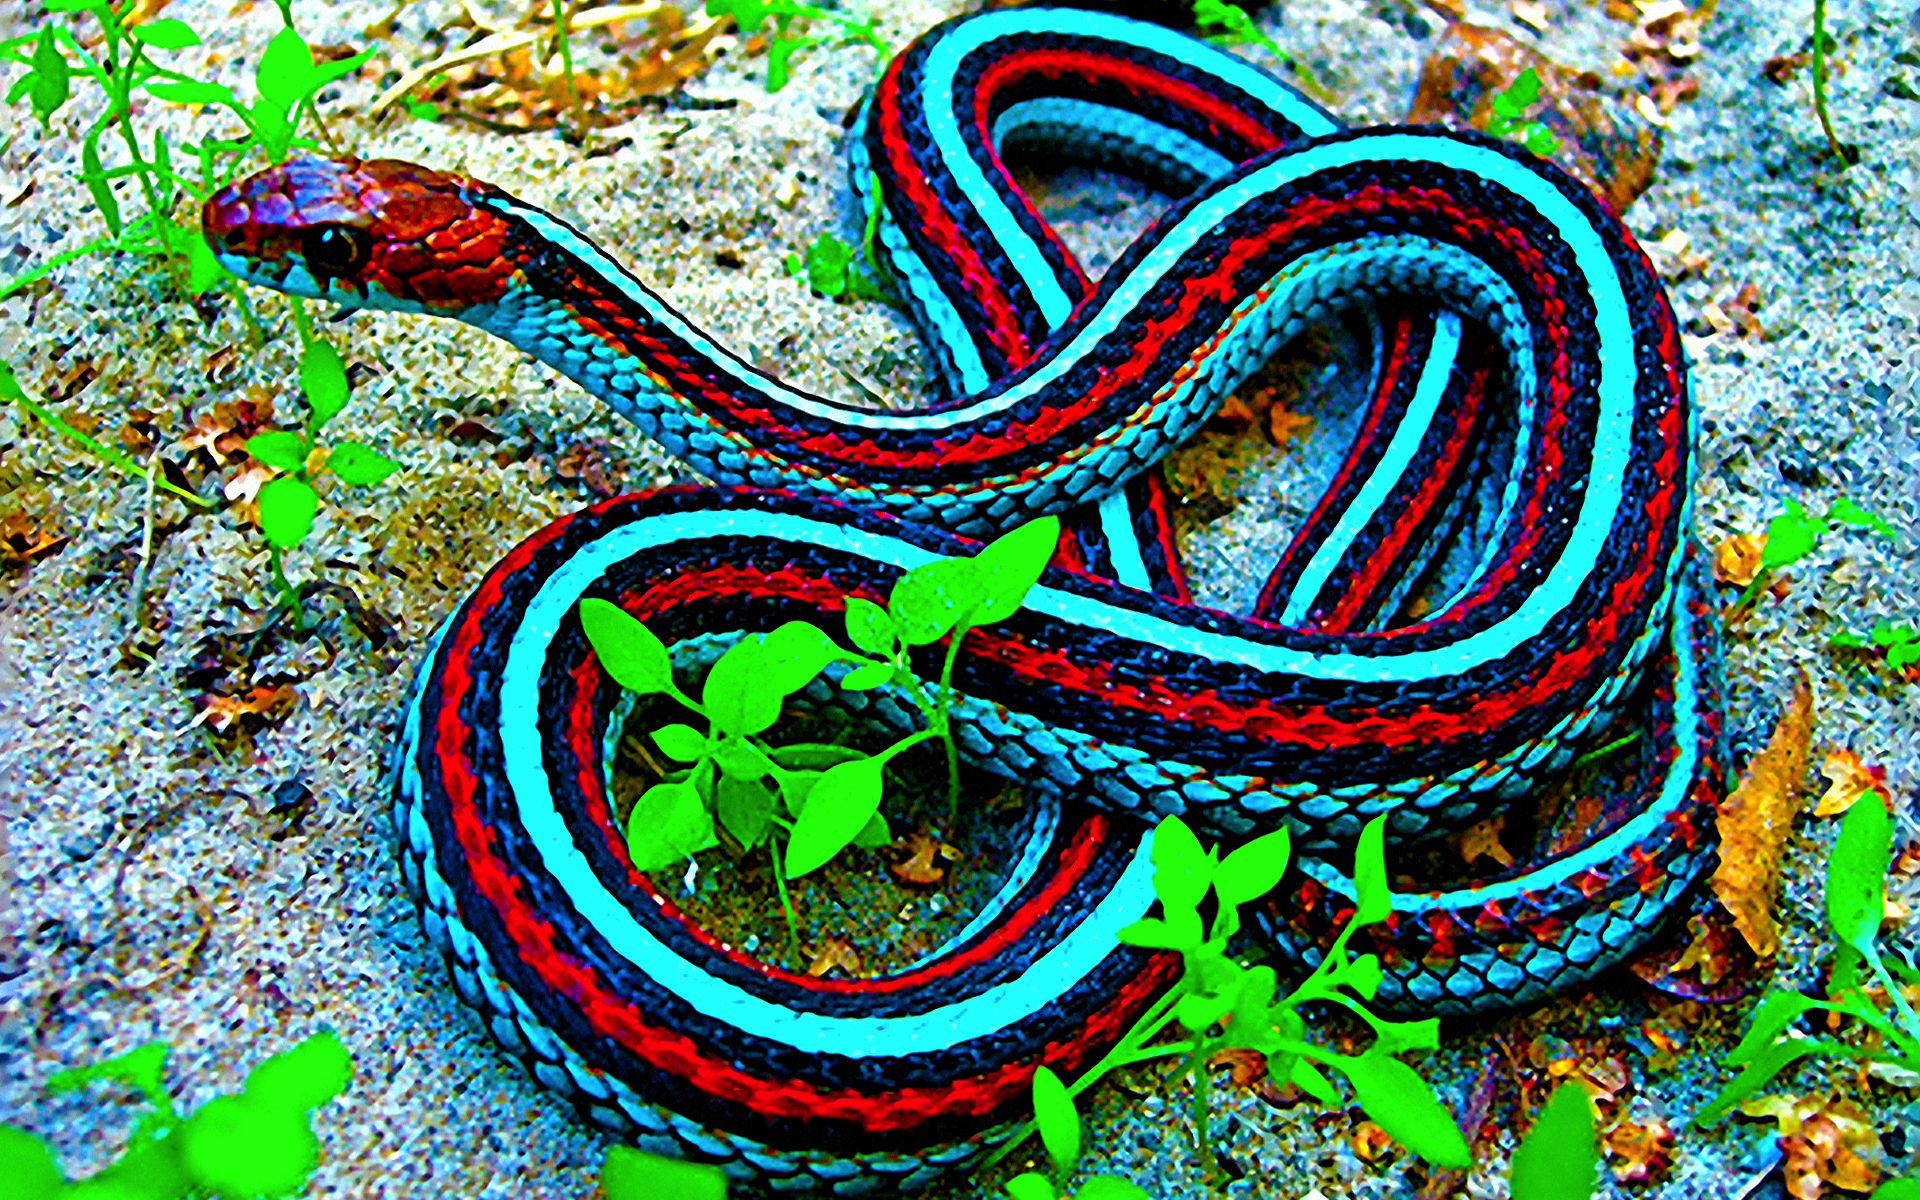 snakes, reptiles, Garter Snakes - desktop wallpaper